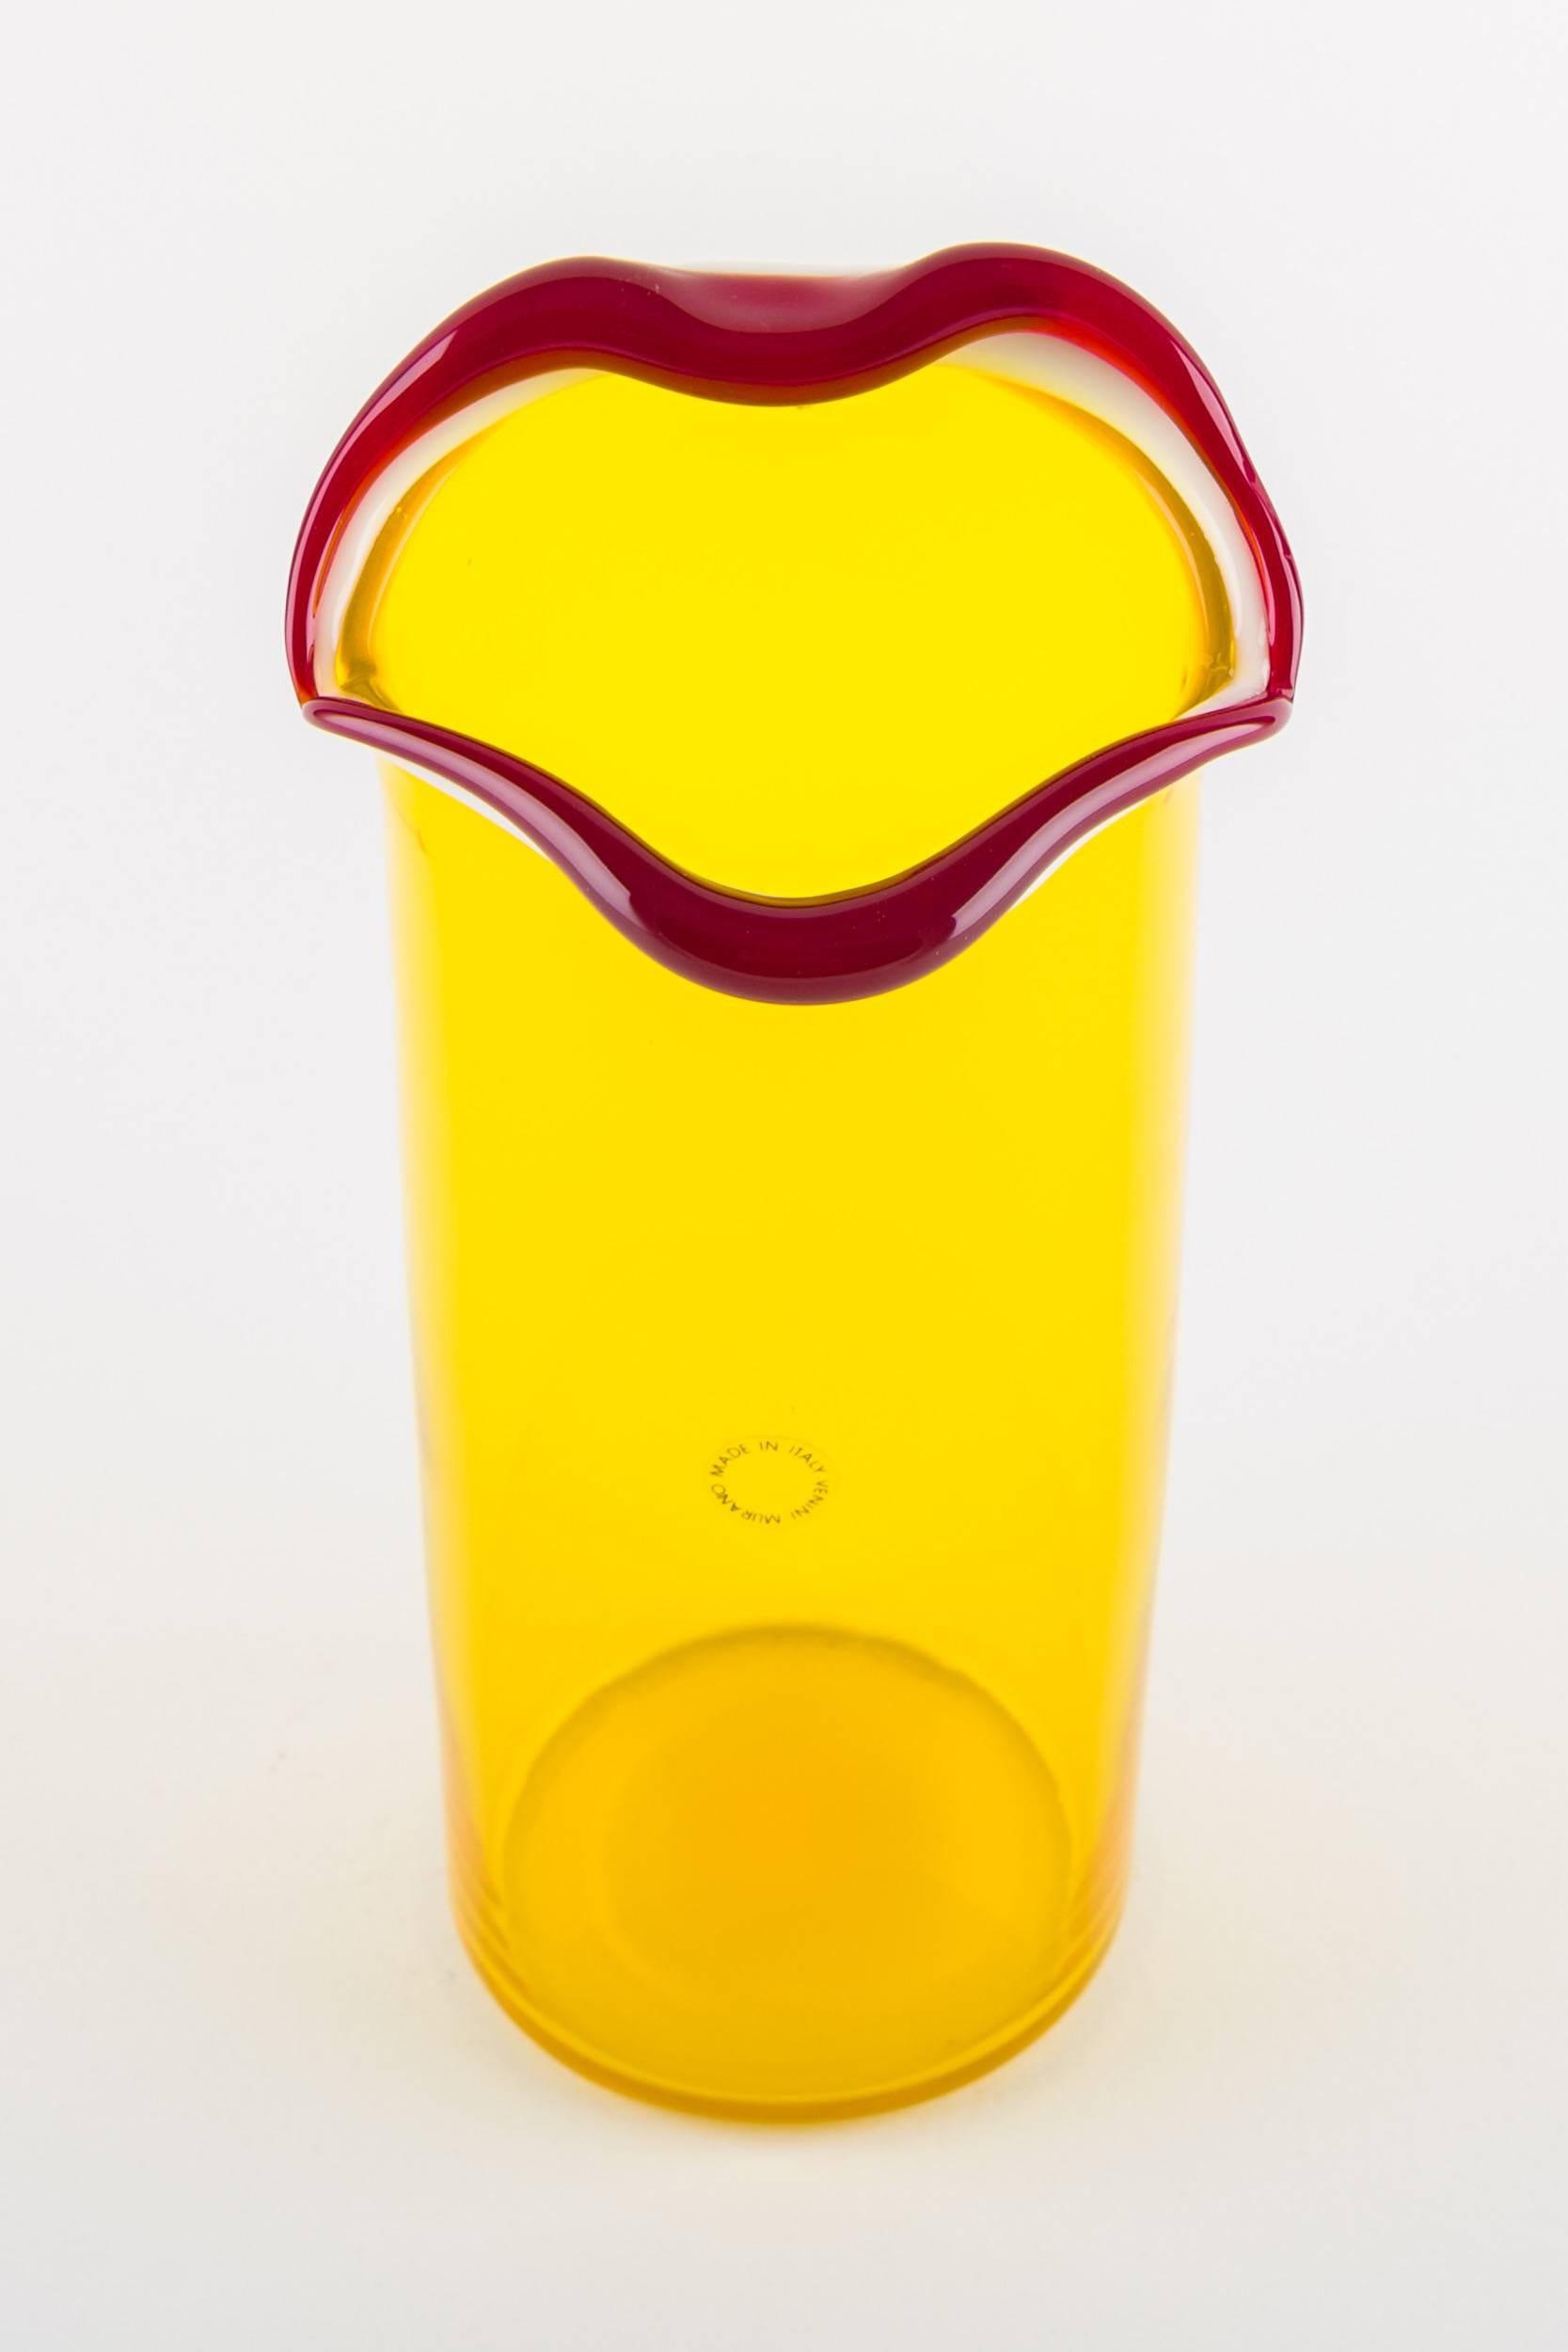 Art Glass Venini Murano Fulvio Bianconi Sorriso 'Smile' Mouth Blown Vase, Yellow Color